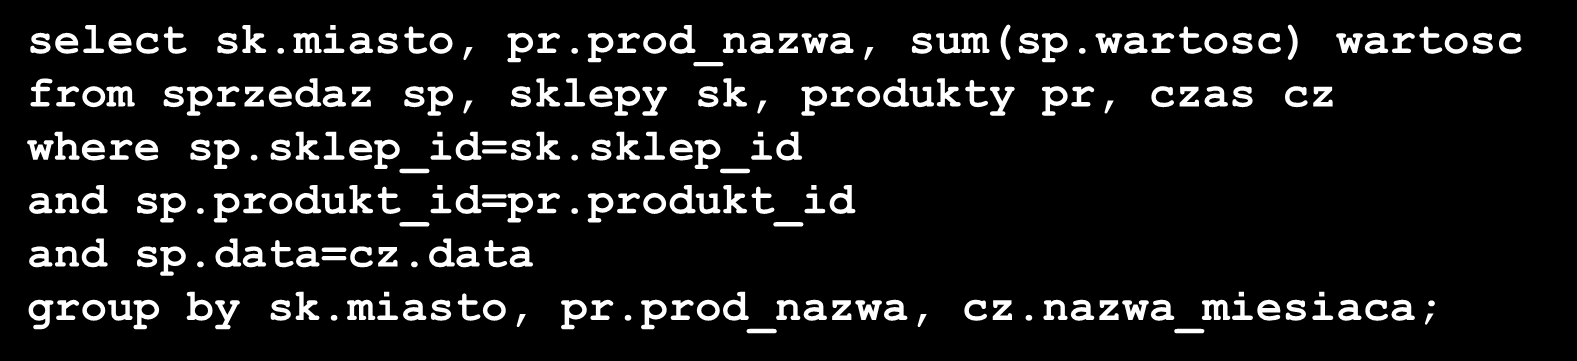 Przepisywanie zapytań - przykład (3) select sk.miasto, pr.prod_nazwa, sum(sp.wartosc) wartosc from sprzedaz sp, sklepy sk, produkty pr, czas cz where sp.sklep_id=sk.